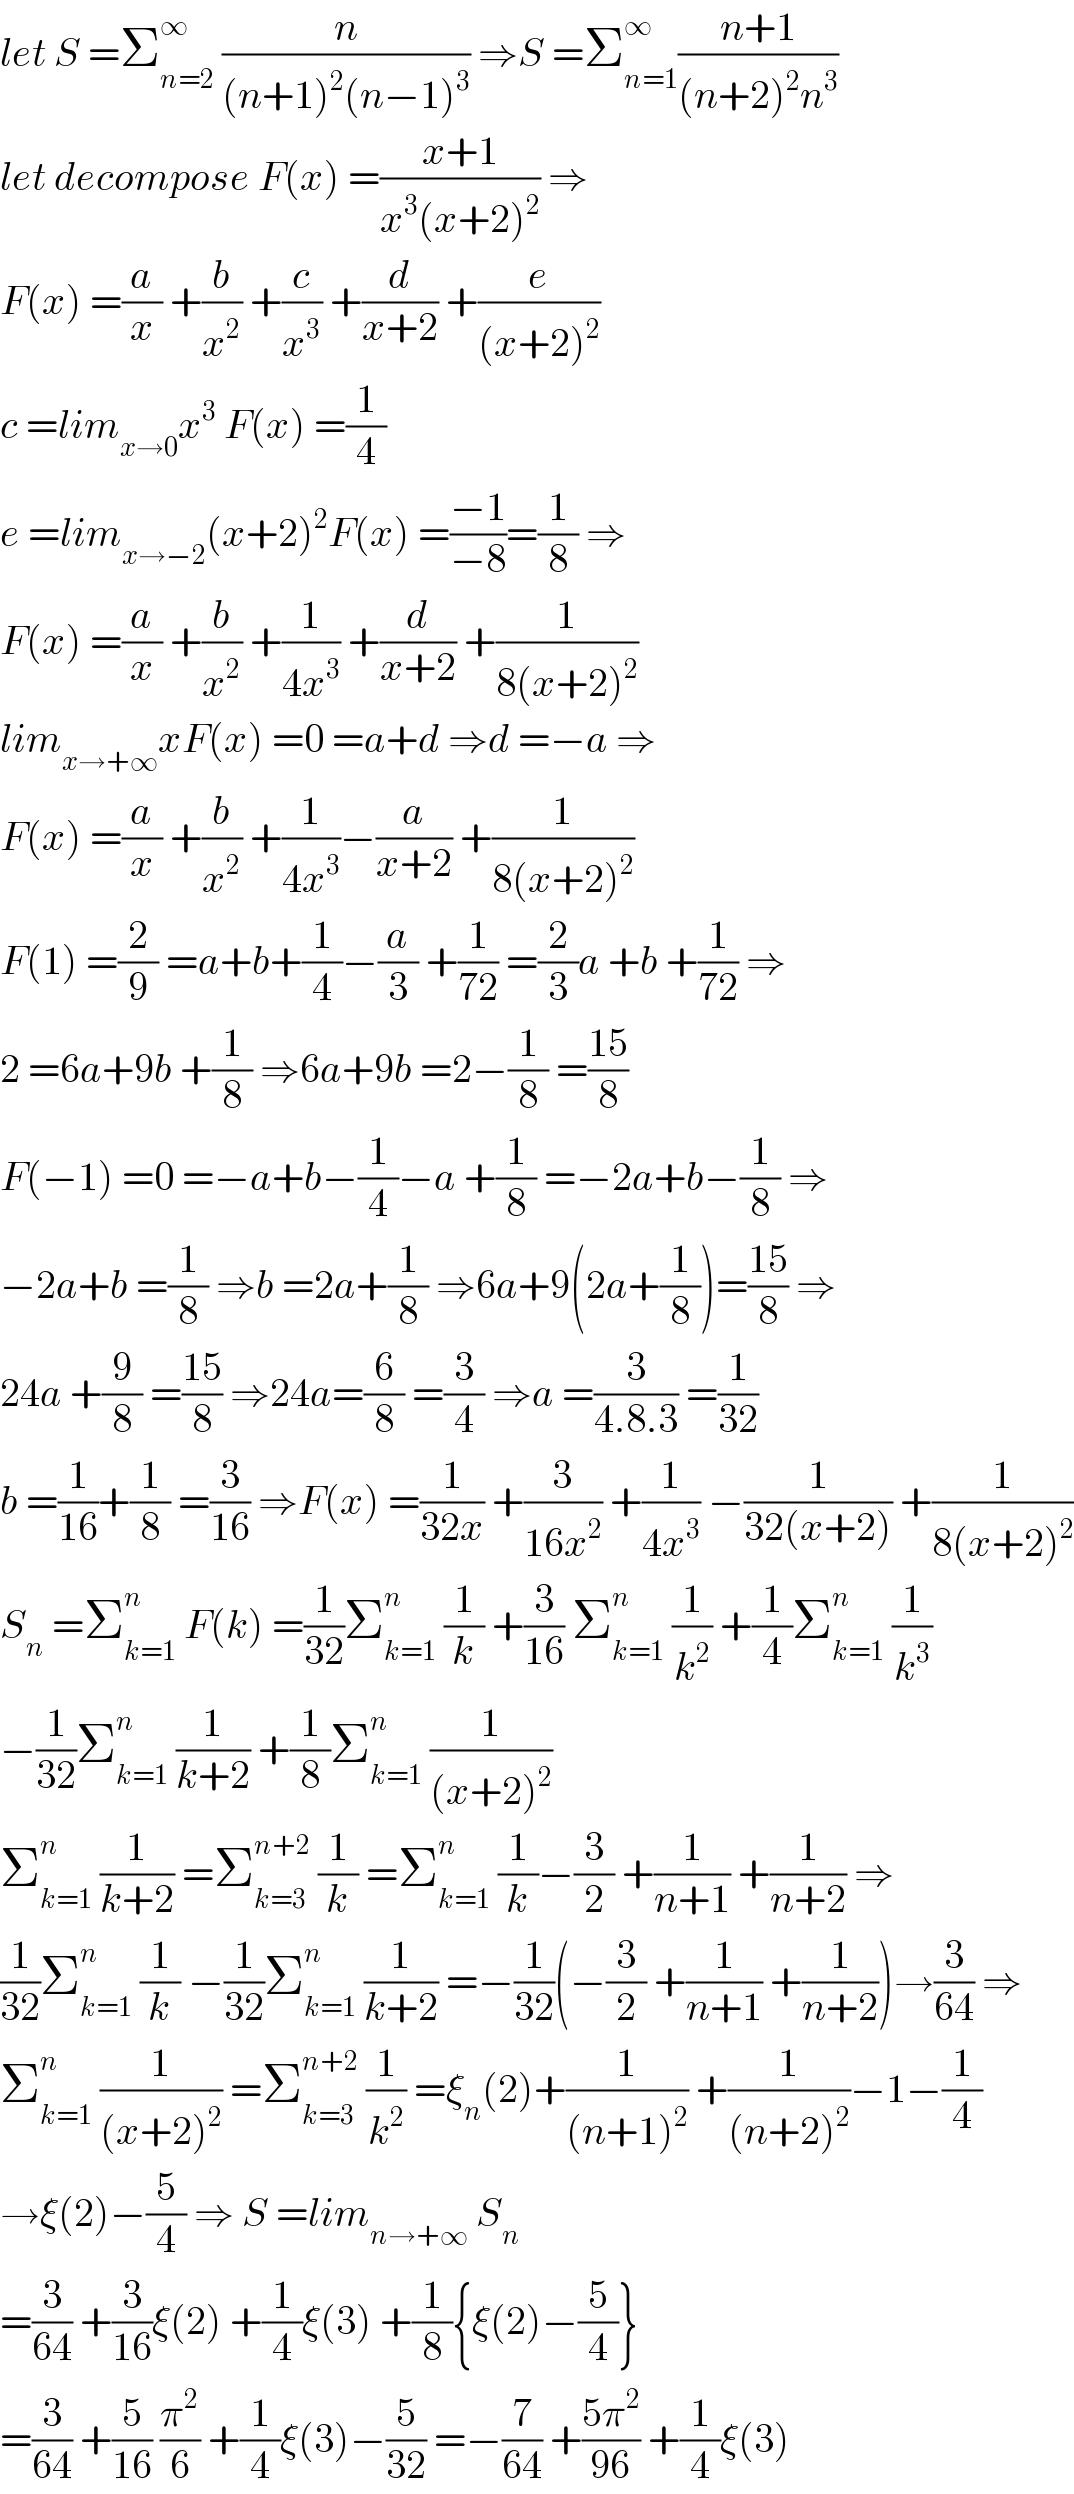 let S =Σ_(n=2) ^∞  (n/((n+1)^2 (n−1)^3 )) ⇒S =Σ_(n=1) ^∞ ((n+1)/((n+2)^2 n^3 ))  let decompose F(x) =((x+1)/(x^3 (x+2)^2 )) ⇒  F(x) =(a/x) +(b/x^2 ) +(c/x^3 ) +(d/(x+2)) +(e/((x+2)^2 ))  c =lim_(x→0) x^3  F(x) =(1/4)  e =lim_(x→−2) (x+2)^2 F(x) =((−1)/(−8))=(1/8) ⇒  F(x) =(a/x) +(b/x^2 ) +(1/(4x^3 )) +(d/(x+2)) +(1/(8(x+2)^2 ))  lim_(x→+∞) xF(x) =0 =a+d ⇒d =−a ⇒  F(x) =(a/x) +(b/x^2 ) +(1/(4x^3 ))−(a/(x+2)) +(1/(8(x+2)^2 ))  F(1) =(2/9) =a+b+(1/4)−(a/3) +(1/(72)) =(2/3)a +b +(1/(72)) ⇒  2 =6a+9b +(1/8) ⇒6a+9b =2−(1/8) =((15)/8)  F(−1) =0 =−a+b−(1/4)−a +(1/8) =−2a+b−(1/8) ⇒  −2a+b =(1/8) ⇒b =2a+(1/8) ⇒6a+9(2a+(1/8))=((15)/8) ⇒  24a +(9/8) =((15)/8) ⇒24a=(6/8) =(3/4) ⇒a =(3/(4.8.3)) =(1/(32))  b =(1/(16))+(1/8) =(3/(16)) ⇒F(x) =(1/(32x)) +(3/(16x^2 )) +(1/(4x^3 )) −(1/(32(x+2))) +(1/(8(x+2)^2 ))  S_n  =Σ_(k=1) ^n  F(k) =(1/(32))Σ_(k=1) ^n  (1/k) +(3/(16)) Σ_(k=1) ^n  (1/k^2 ) +(1/4)Σ_(k=1) ^n  (1/k^3 )  −(1/(32))Σ_(k=1) ^n  (1/(k+2)) +(1/8)Σ_(k=1) ^n  (1/((x+2)^2 ))  Σ_(k=1) ^n  (1/(k+2)) =Σ_(k=3) ^(n+2)  (1/k) =Σ_(k=1) ^n  (1/k)−(3/2) +(1/(n+1)) +(1/(n+2)) ⇒  (1/(32))Σ_(k=1) ^n  (1/k) −(1/(32))Σ_(k=1) ^n  (1/(k+2)) =−(1/(32))(−(3/2) +(1/(n+1)) +(1/(n+2)))→(3/(64)) ⇒  Σ_(k=1) ^n  (1/((x+2)^2 )) =Σ_(k=3) ^(n+2)  (1/k^2 ) =ξ_n (2)+(1/((n+1)^2 )) +(1/((n+2)^2 ))−1−(1/4)  →ξ(2)−(5/4) ⇒ S =lim_(n→+∞)  S_n   =(3/(64)) +(3/(16))ξ(2) +(1/4)ξ(3) +(1/8){ξ(2)−(5/4)}  =(3/(64)) +(5/(16)) (π^2 /6) +(1/4)ξ(3)−(5/(32)) =−(7/(64)) +((5π^2 )/(96)) +(1/4)ξ(3)  